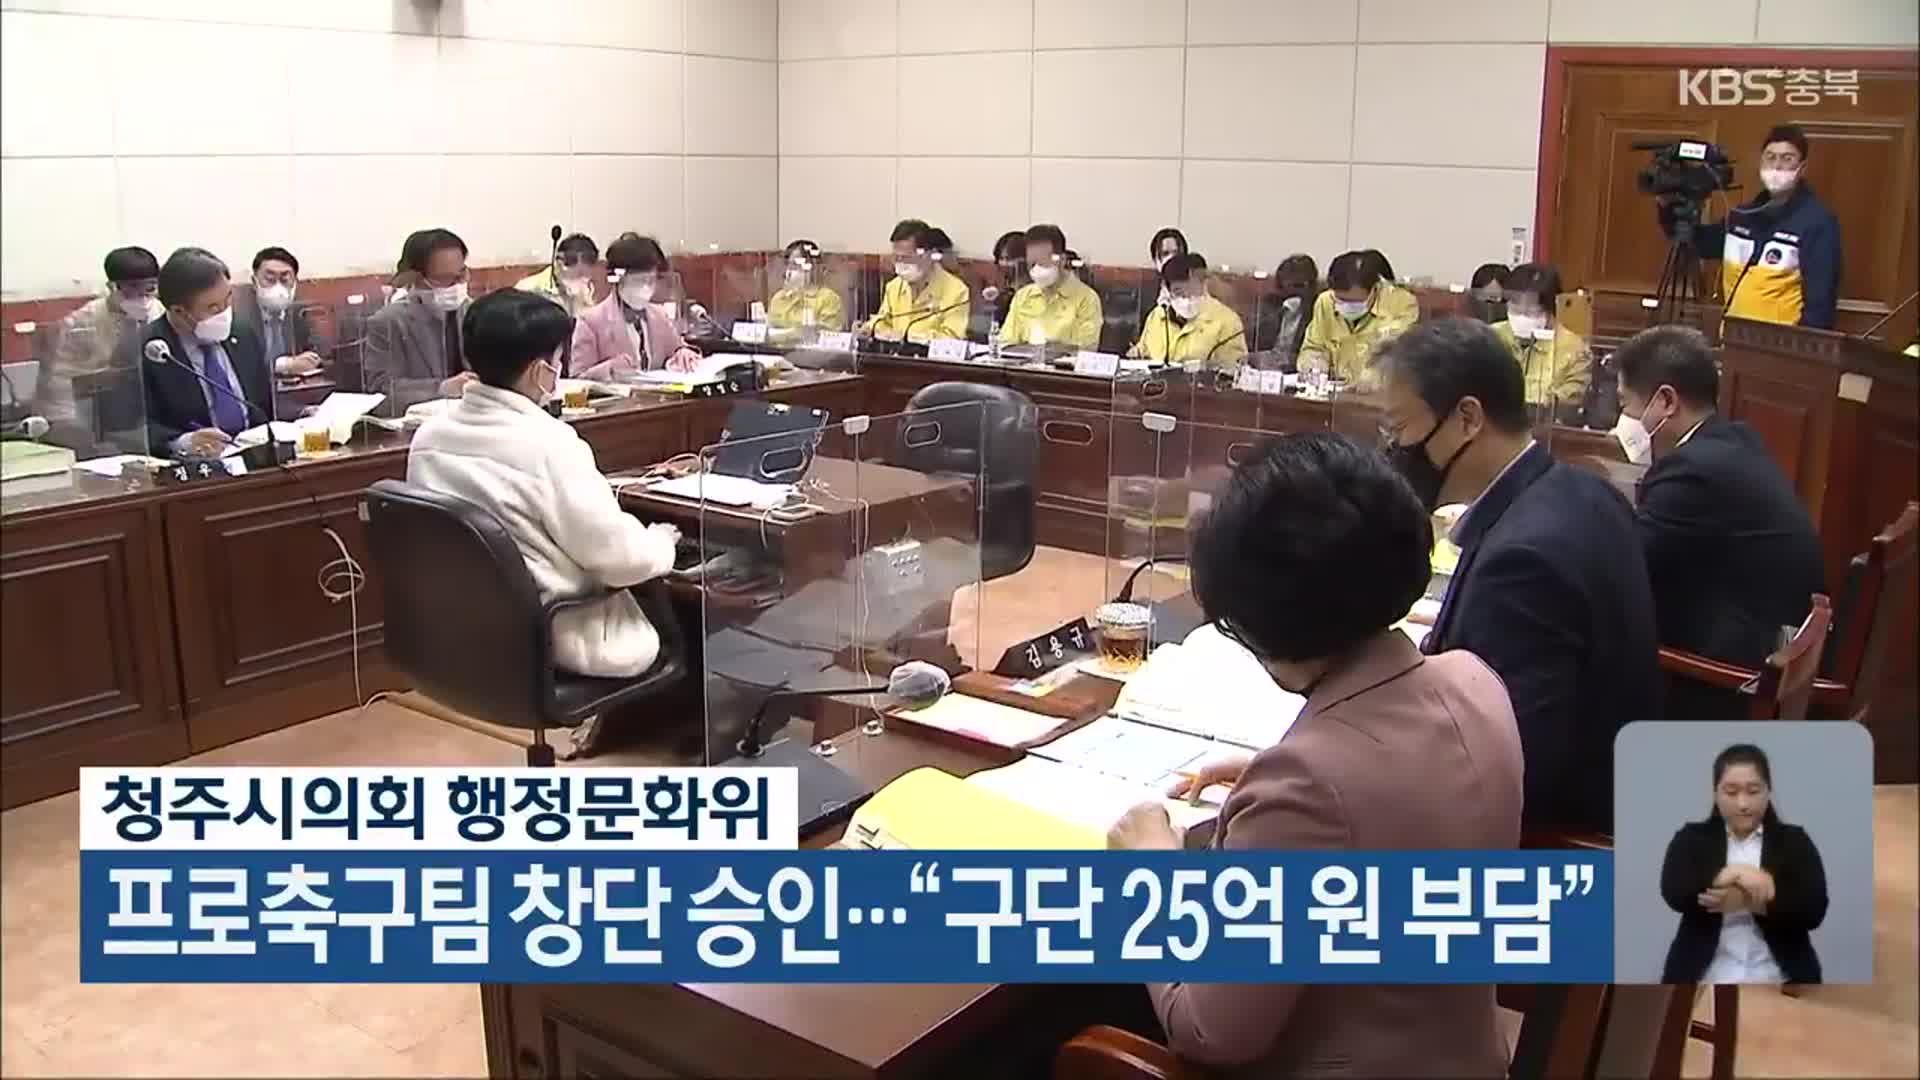 청주 프로축구팀 창단 승인…“구단 25억 원 부담”